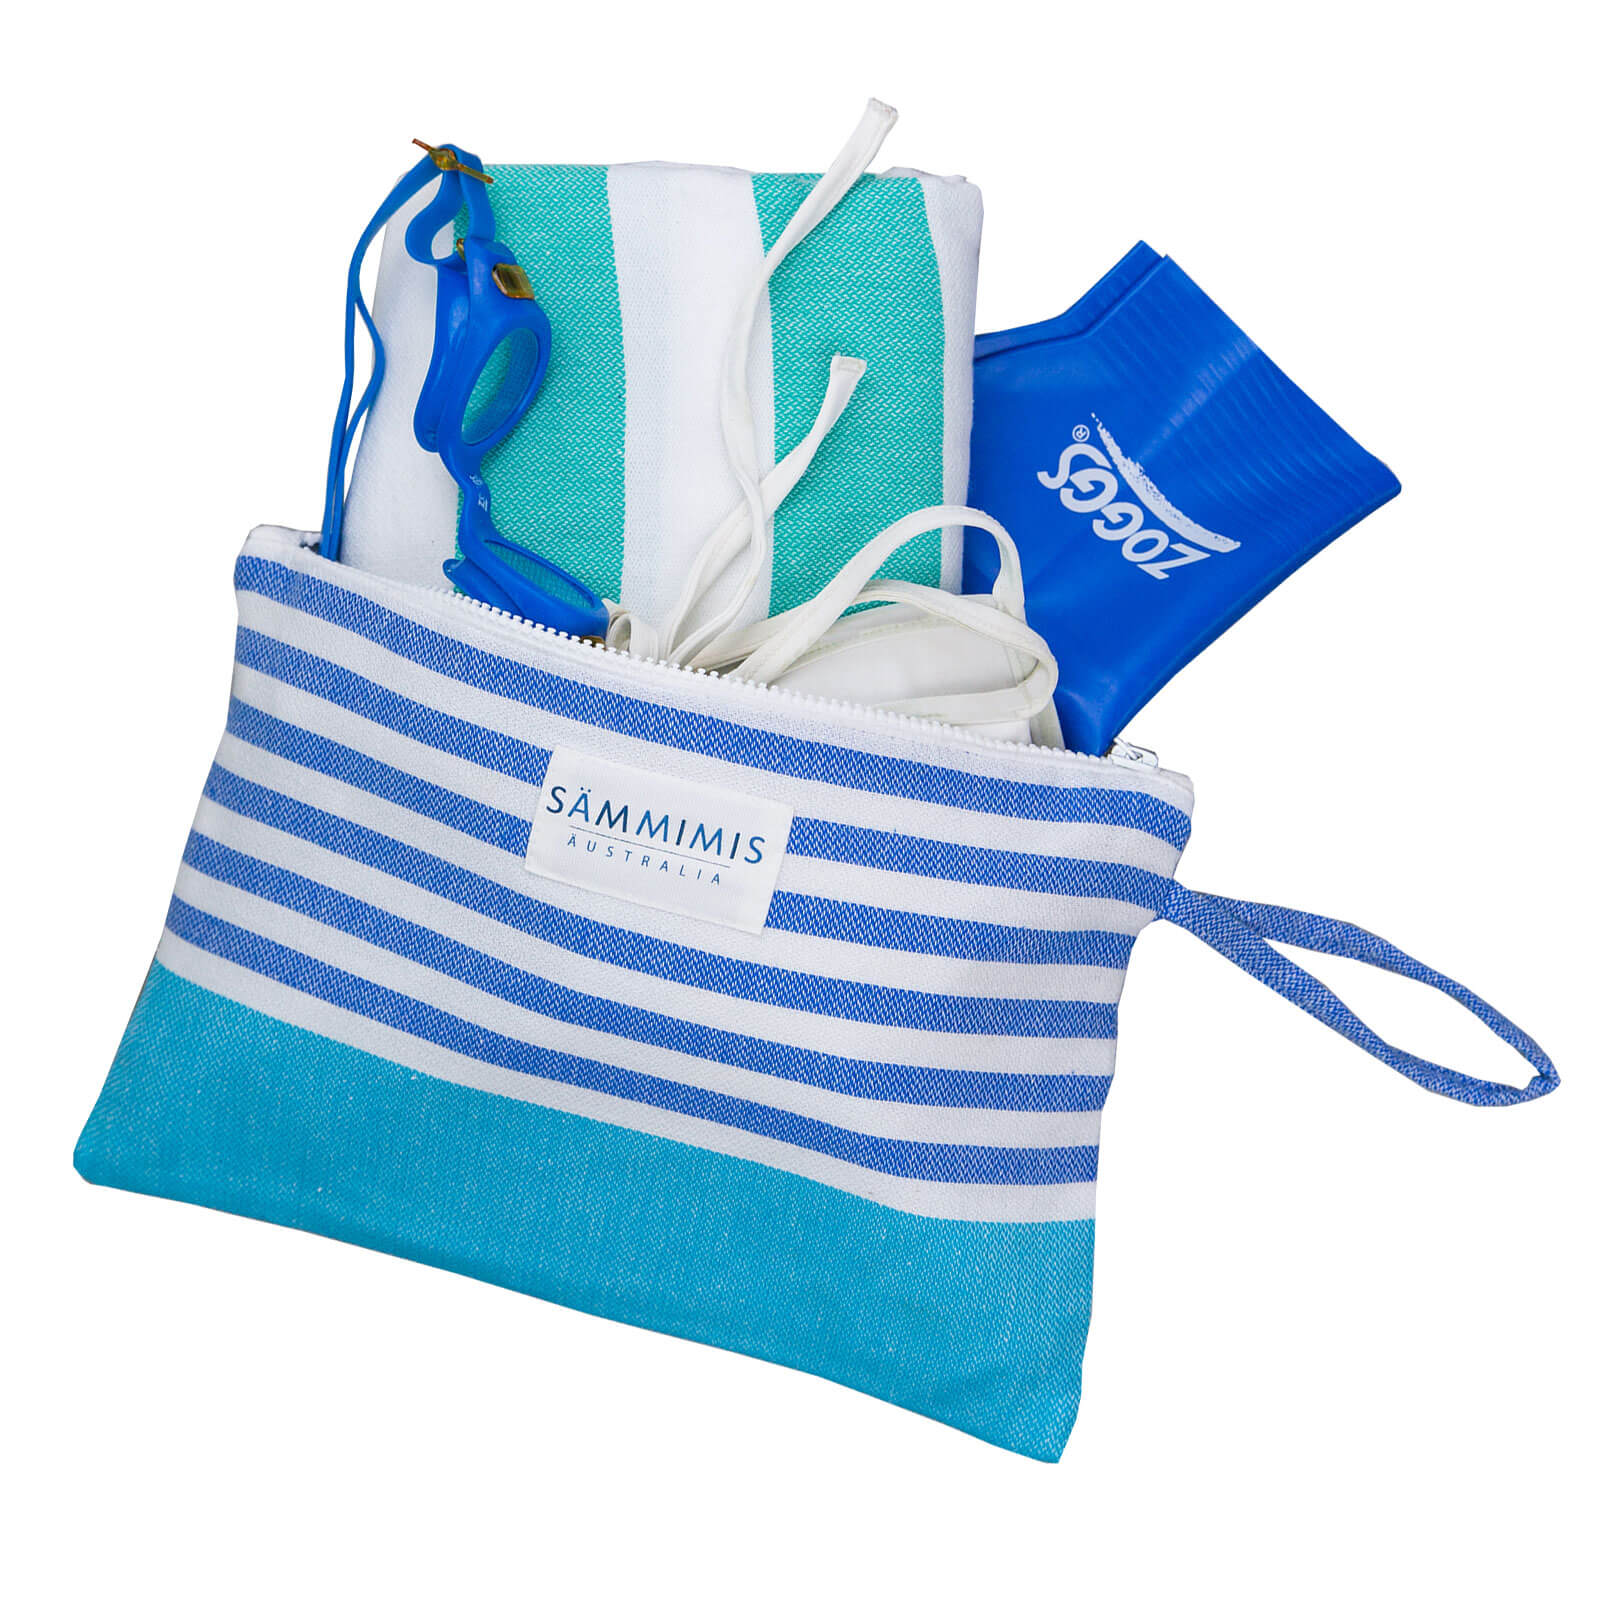 MAYO Swimsuit Wet Bag: Aqua/Royal Blue